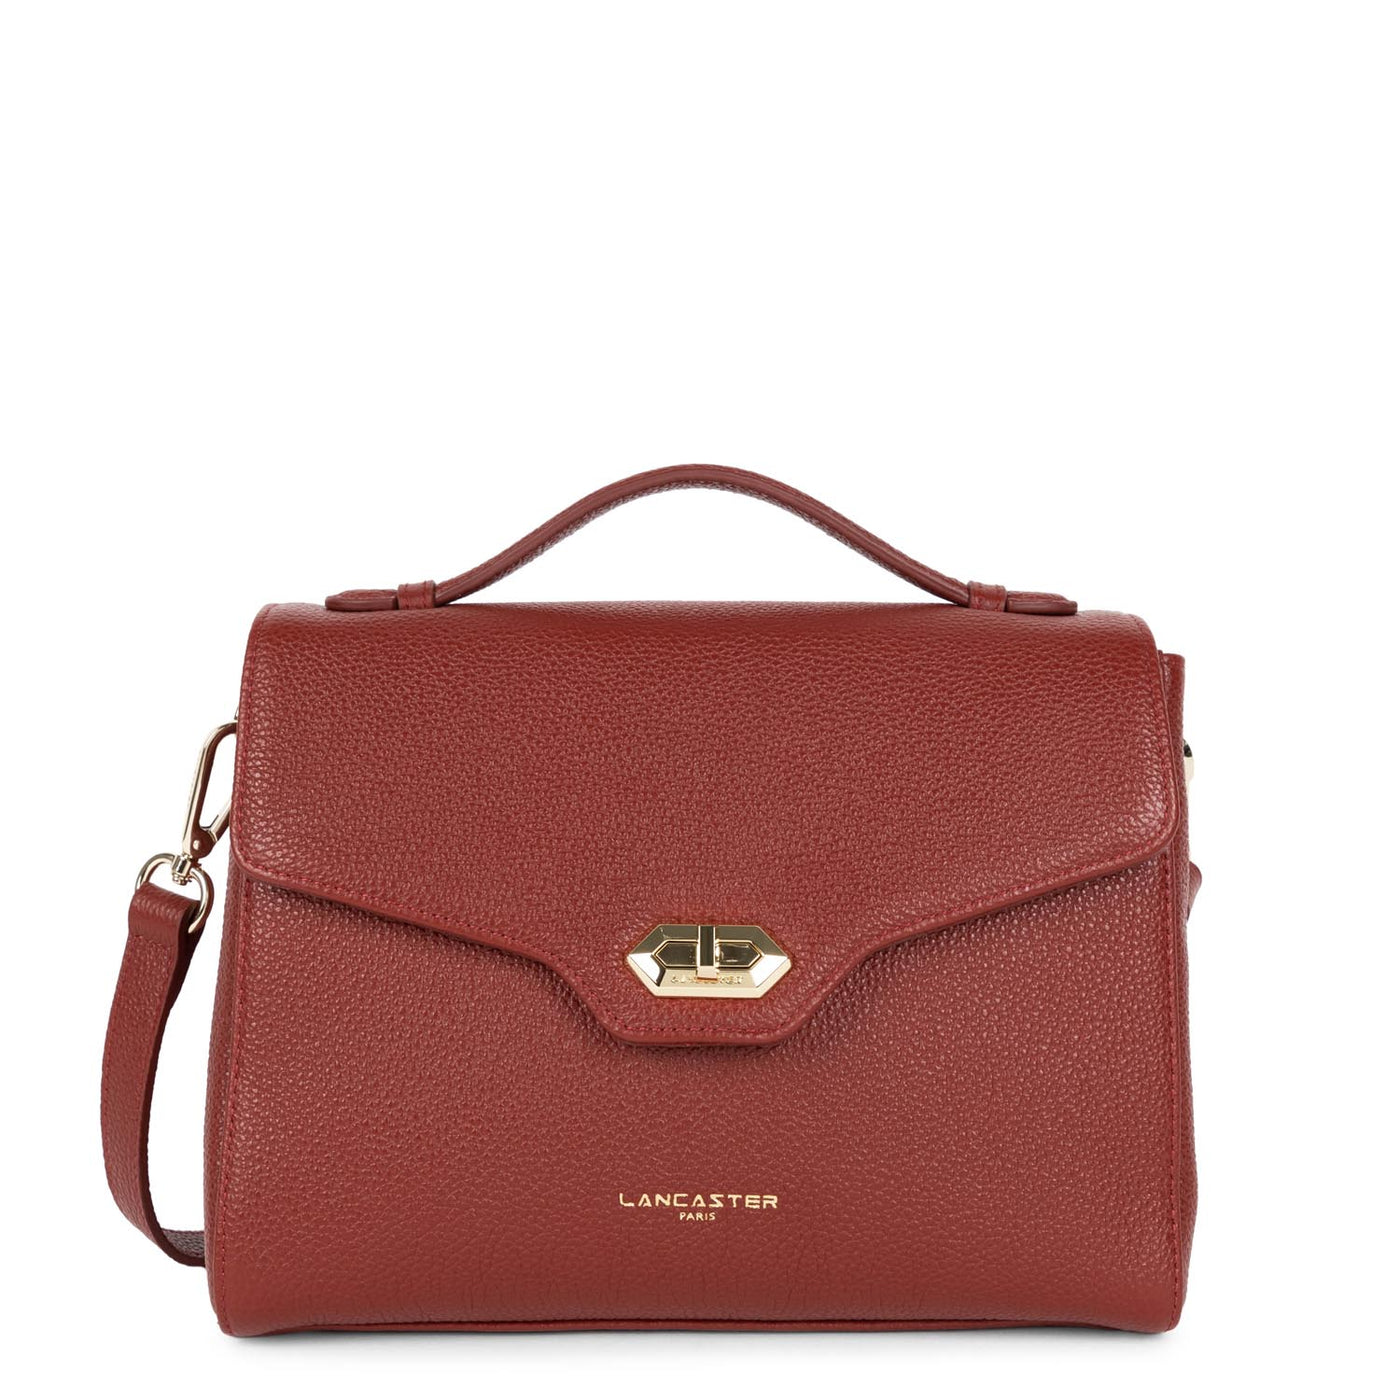 handbag - foulonné milano #couleur_carmin